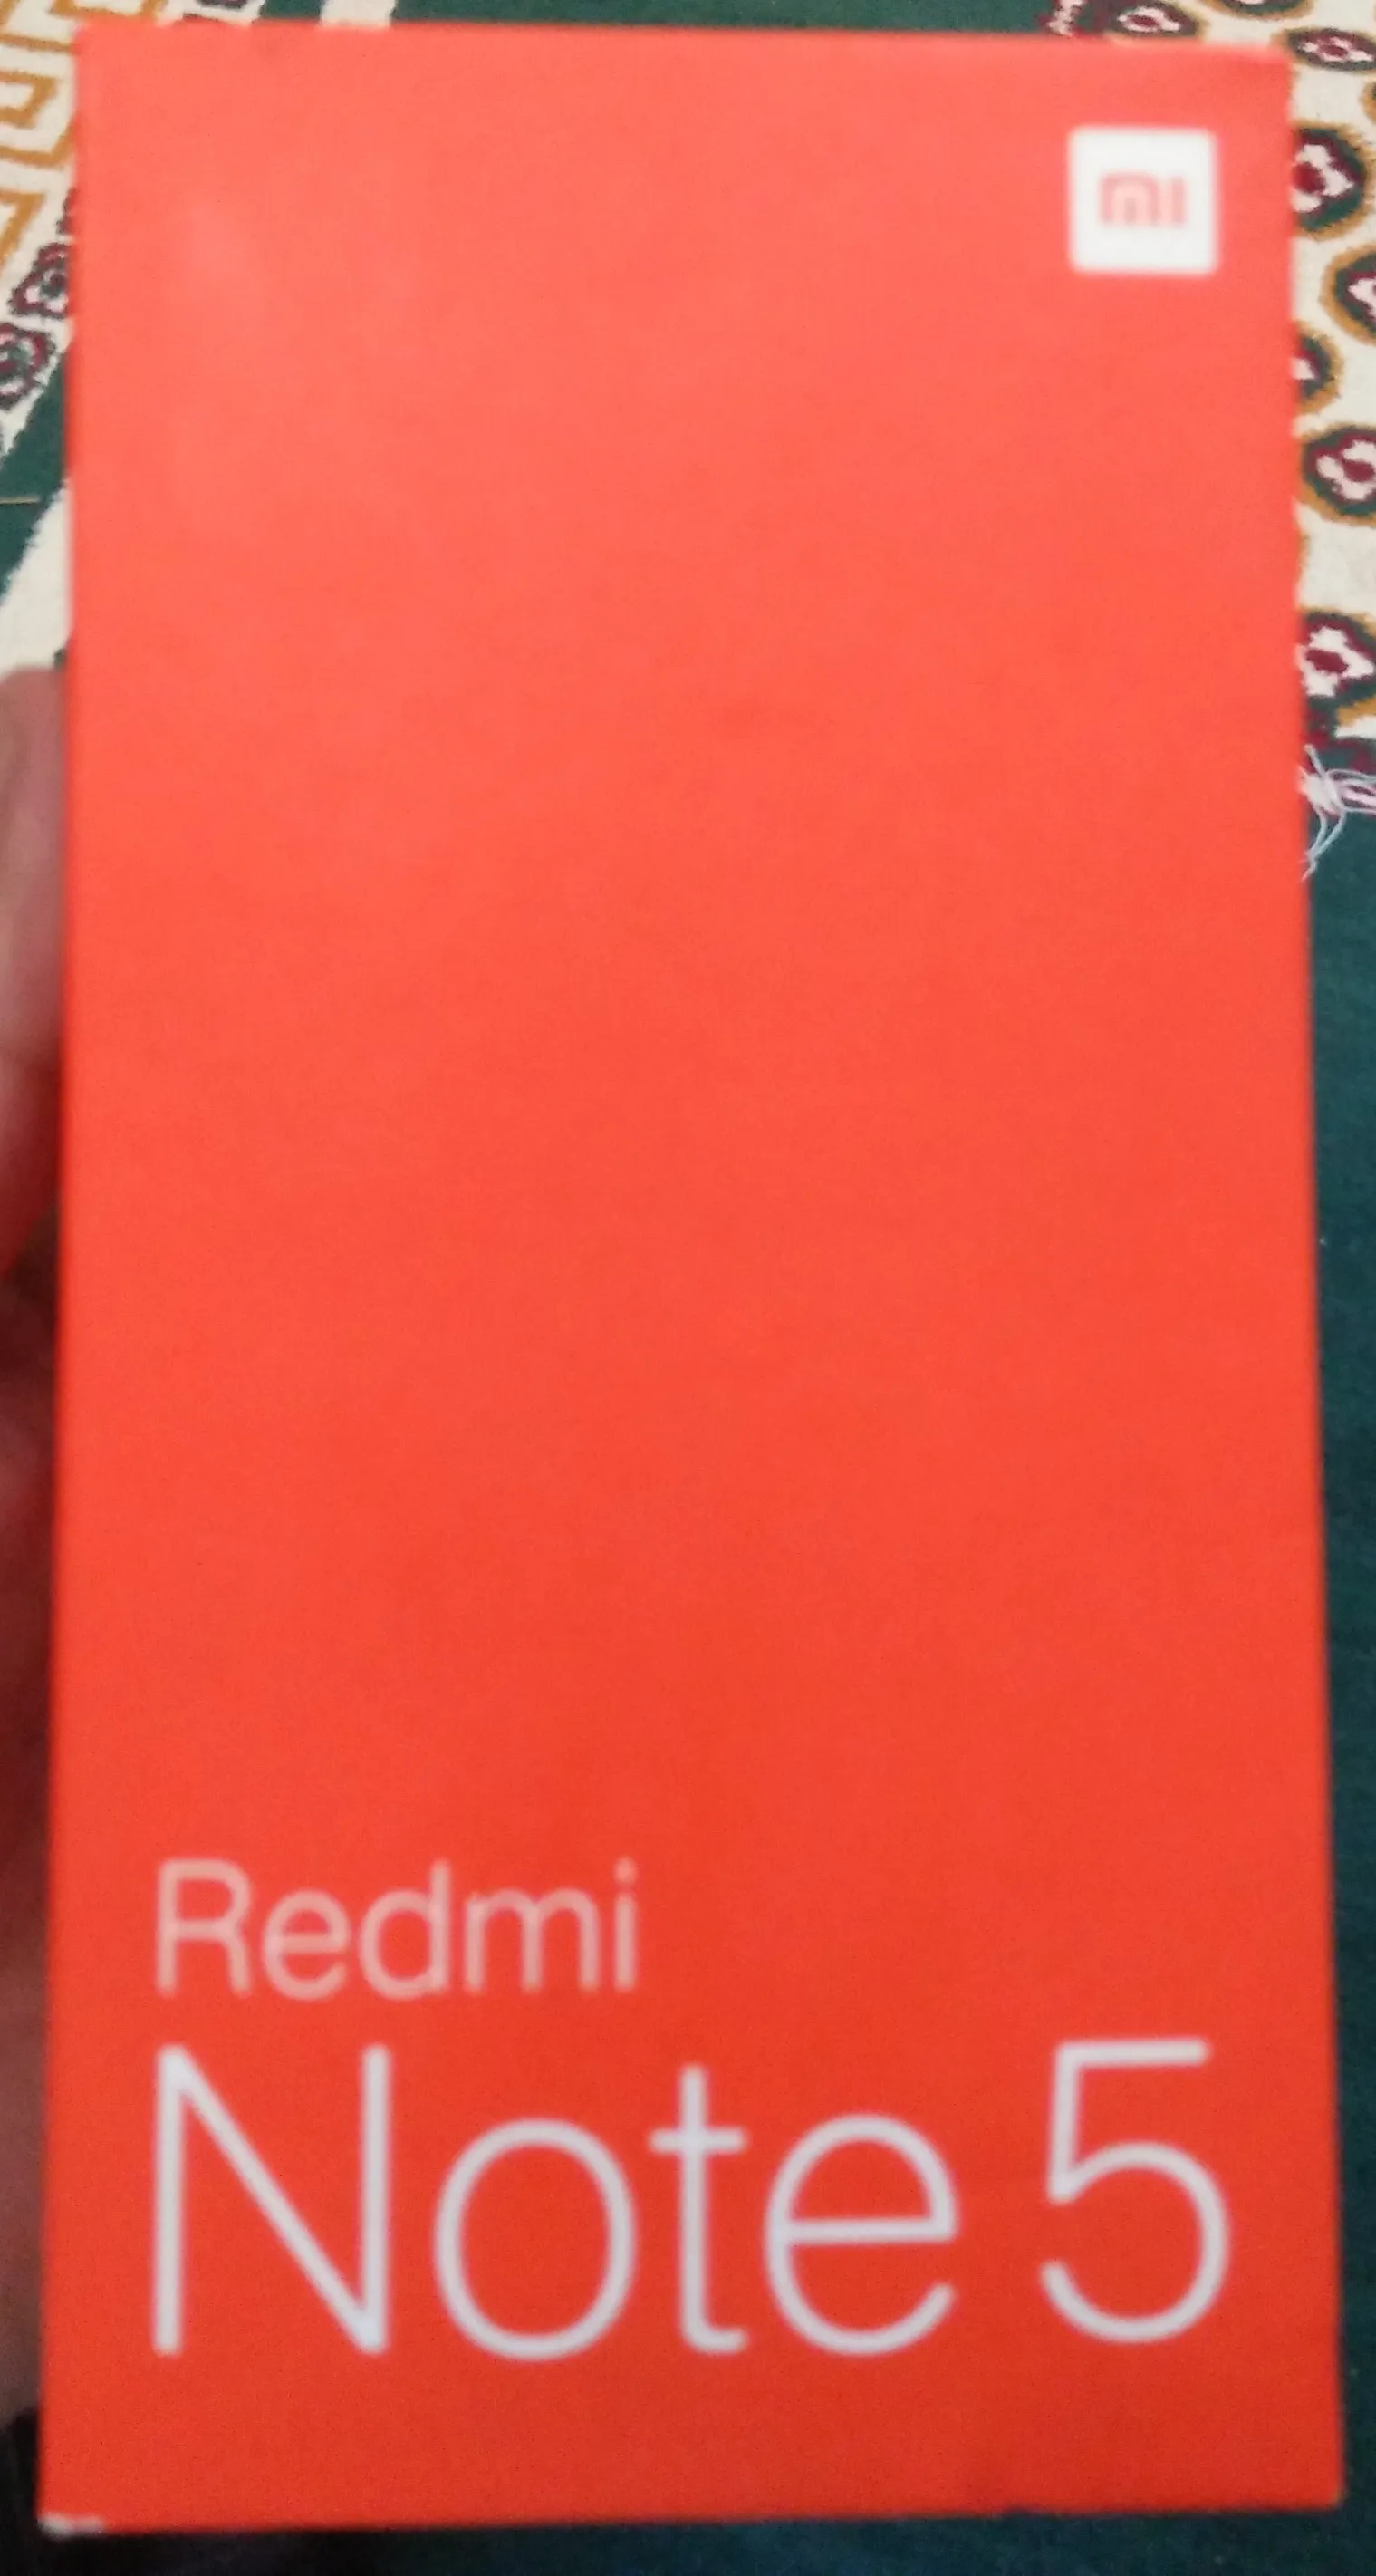 Xiaomi Redmi Note 5 Pro (Global Version) in Lush Condition - photo 1